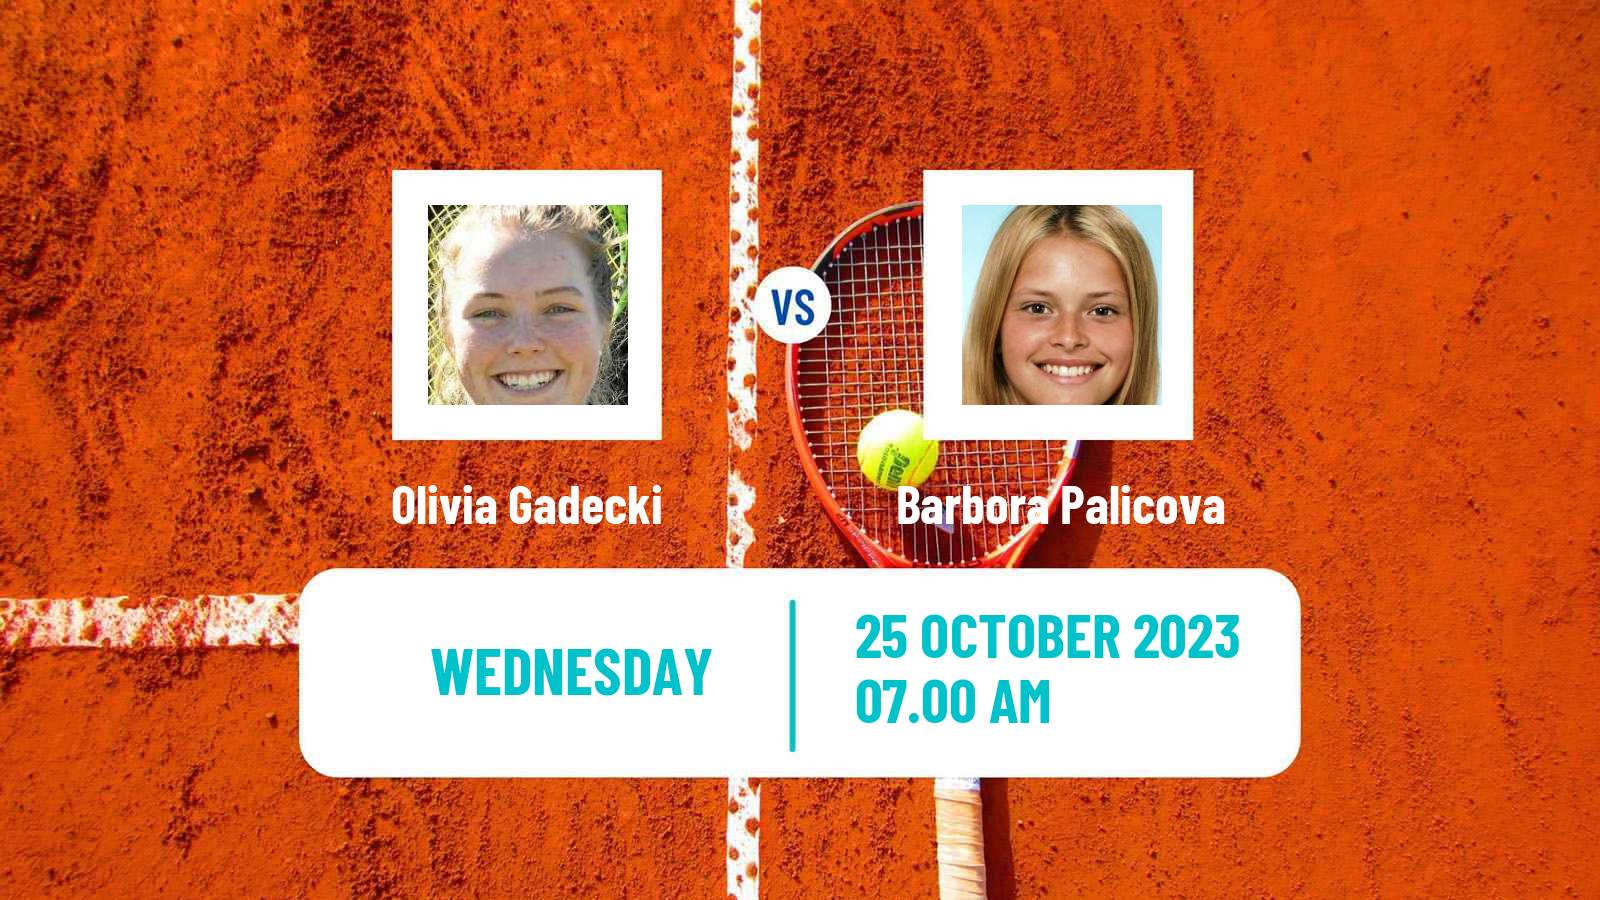 Tennis ITF W60 Glasgow Women Olivia Gadecki - Barbora Palicova